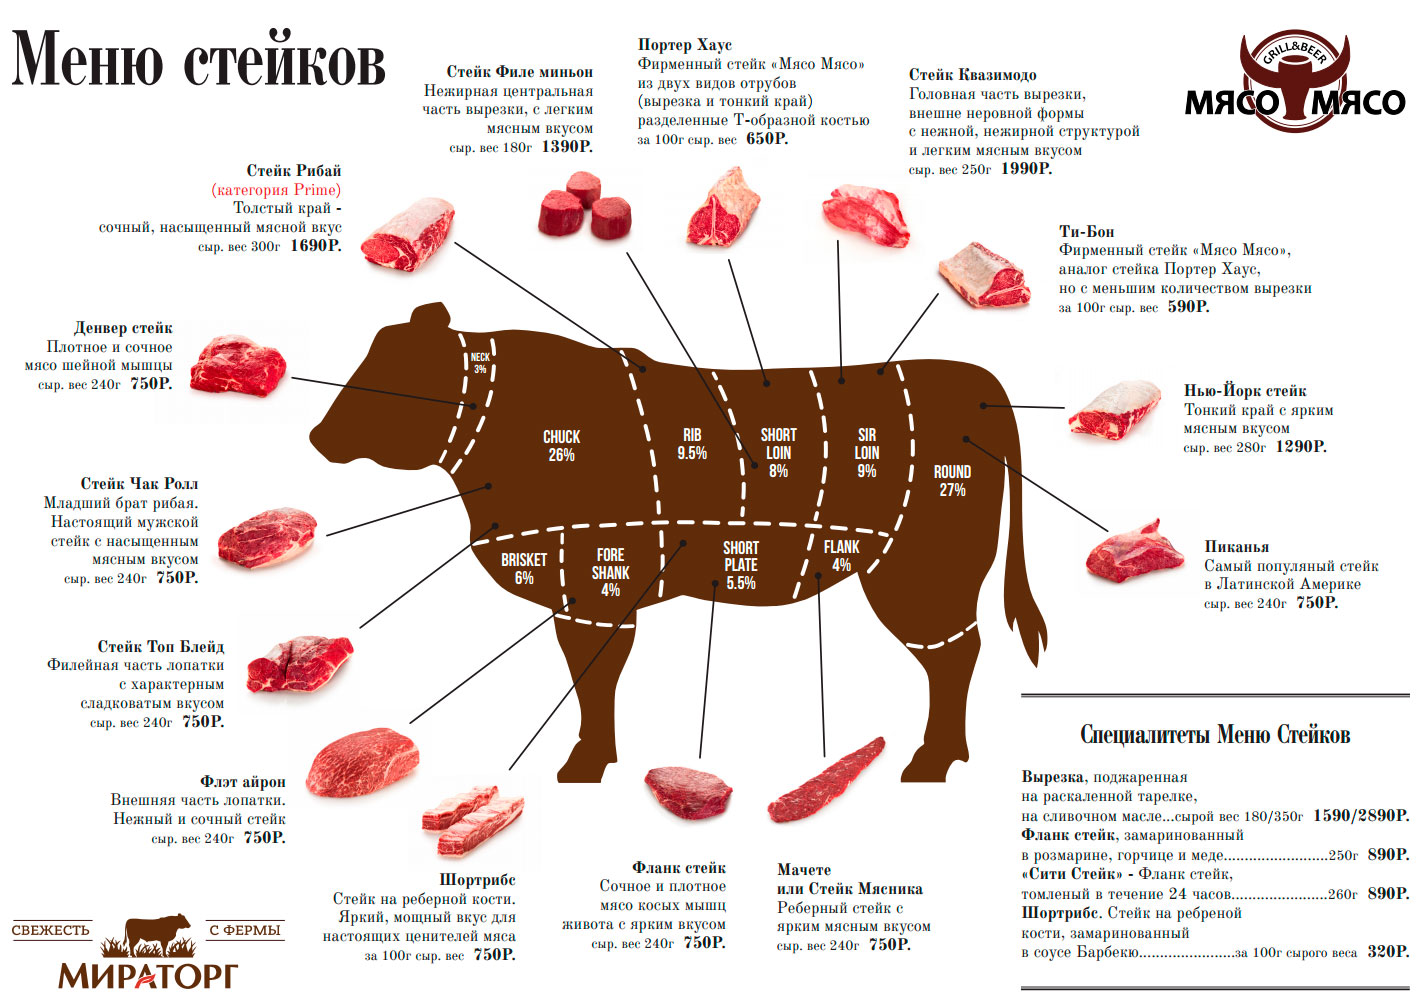 Схема мяса говядины Рибай